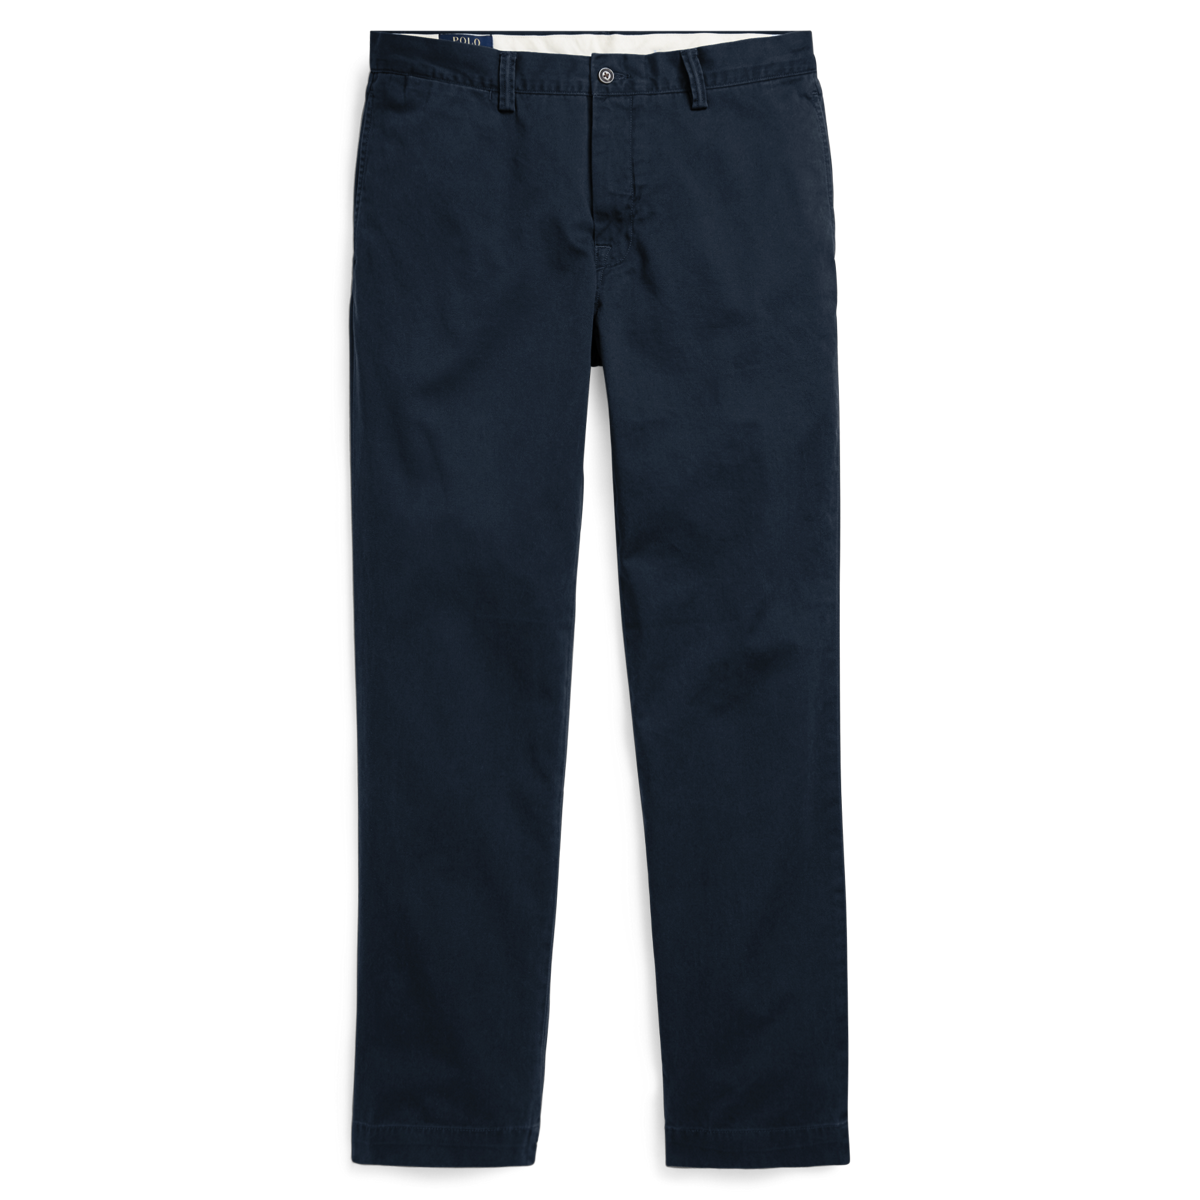 Navy Blue 38                  EU Polo Ralph Lauren Chino trouser discount 98% MEN FASHION Trousers Basic 